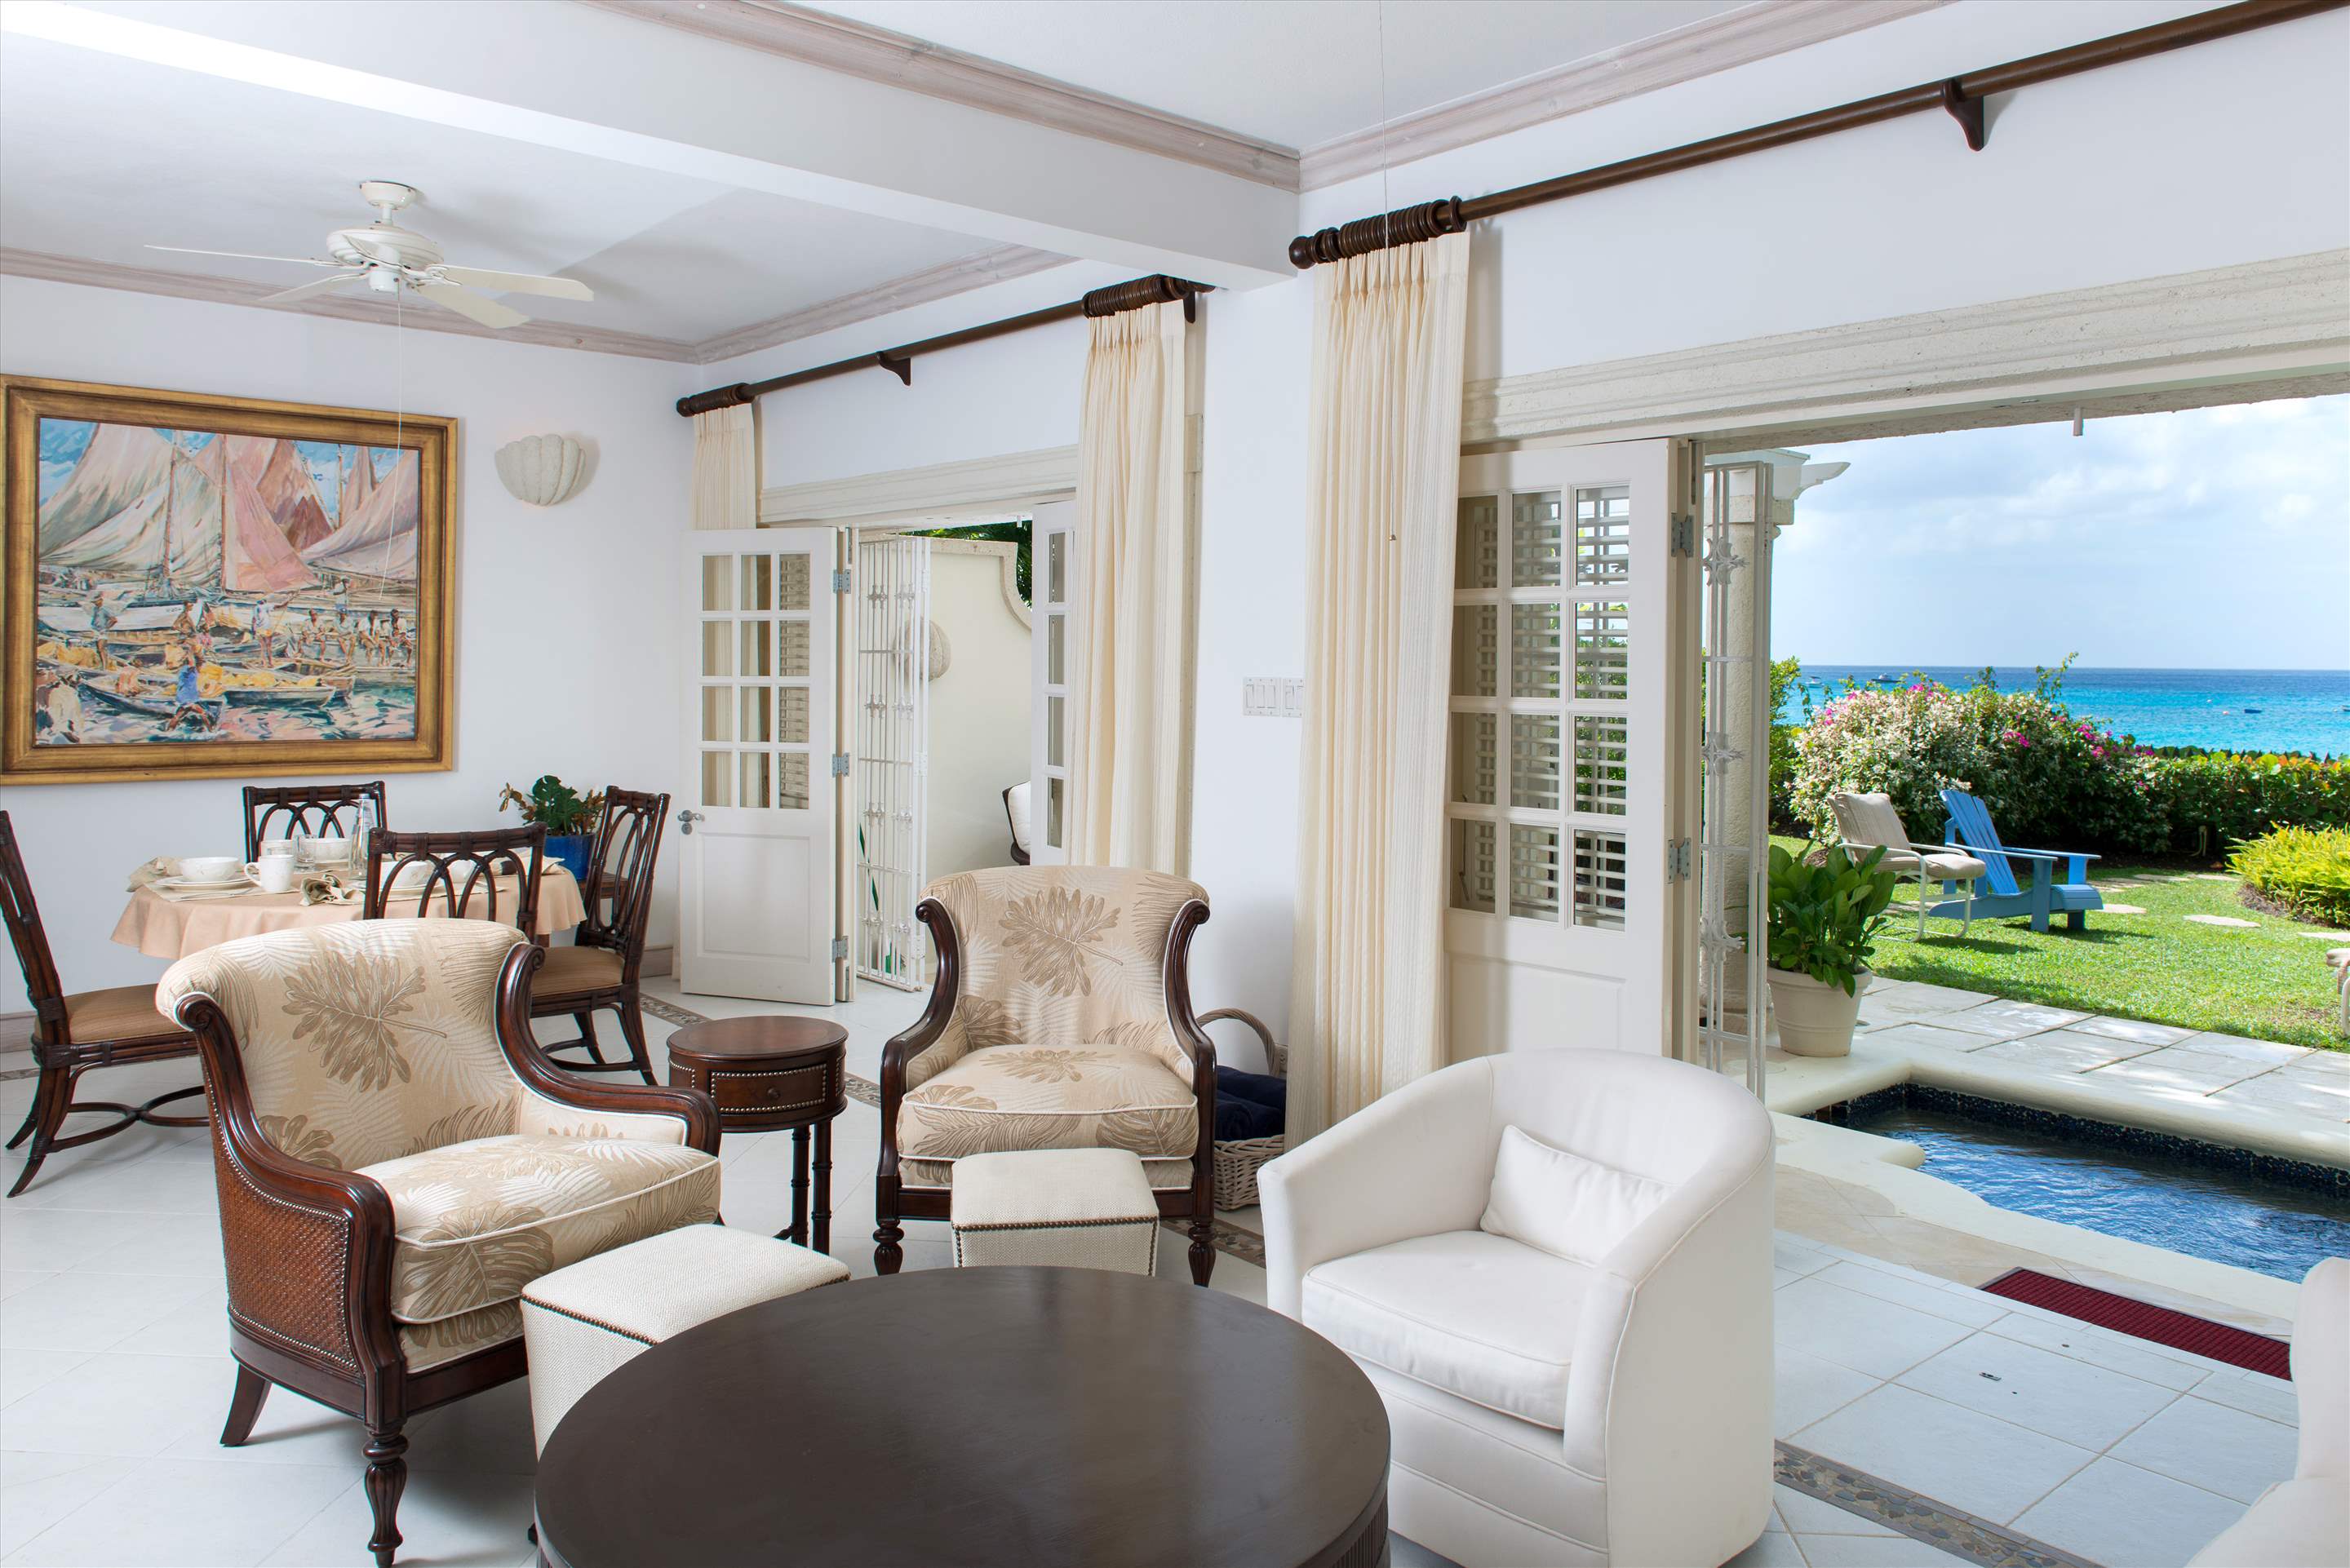 Chanel no.5, 3 bedroom villa in St. James & West Coast, Barbados Photo #3